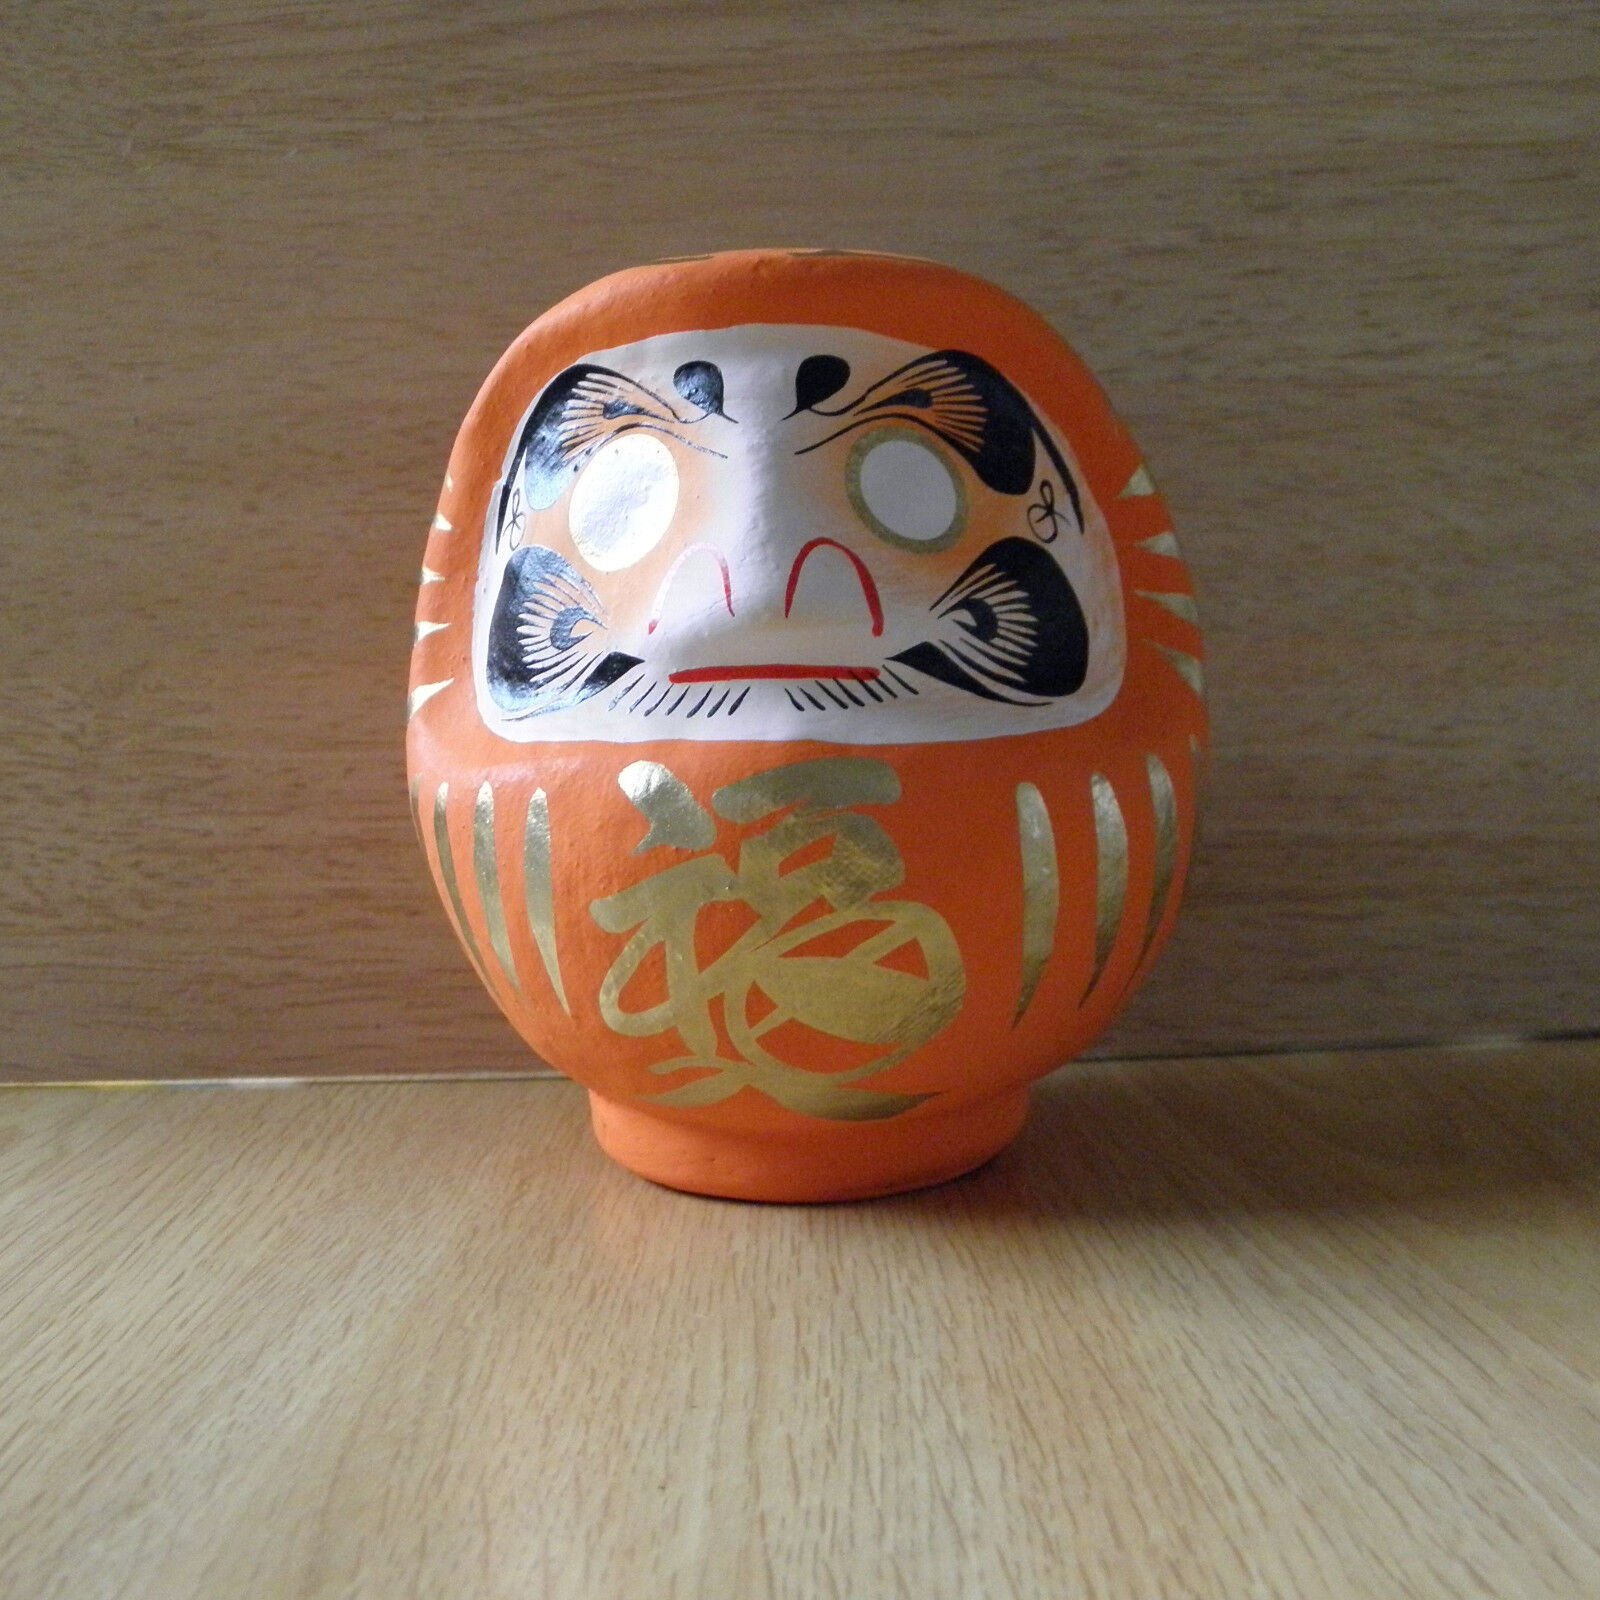 small Daruma Doll in orange color with a pen / Daruma at Takasaki : No 1 size